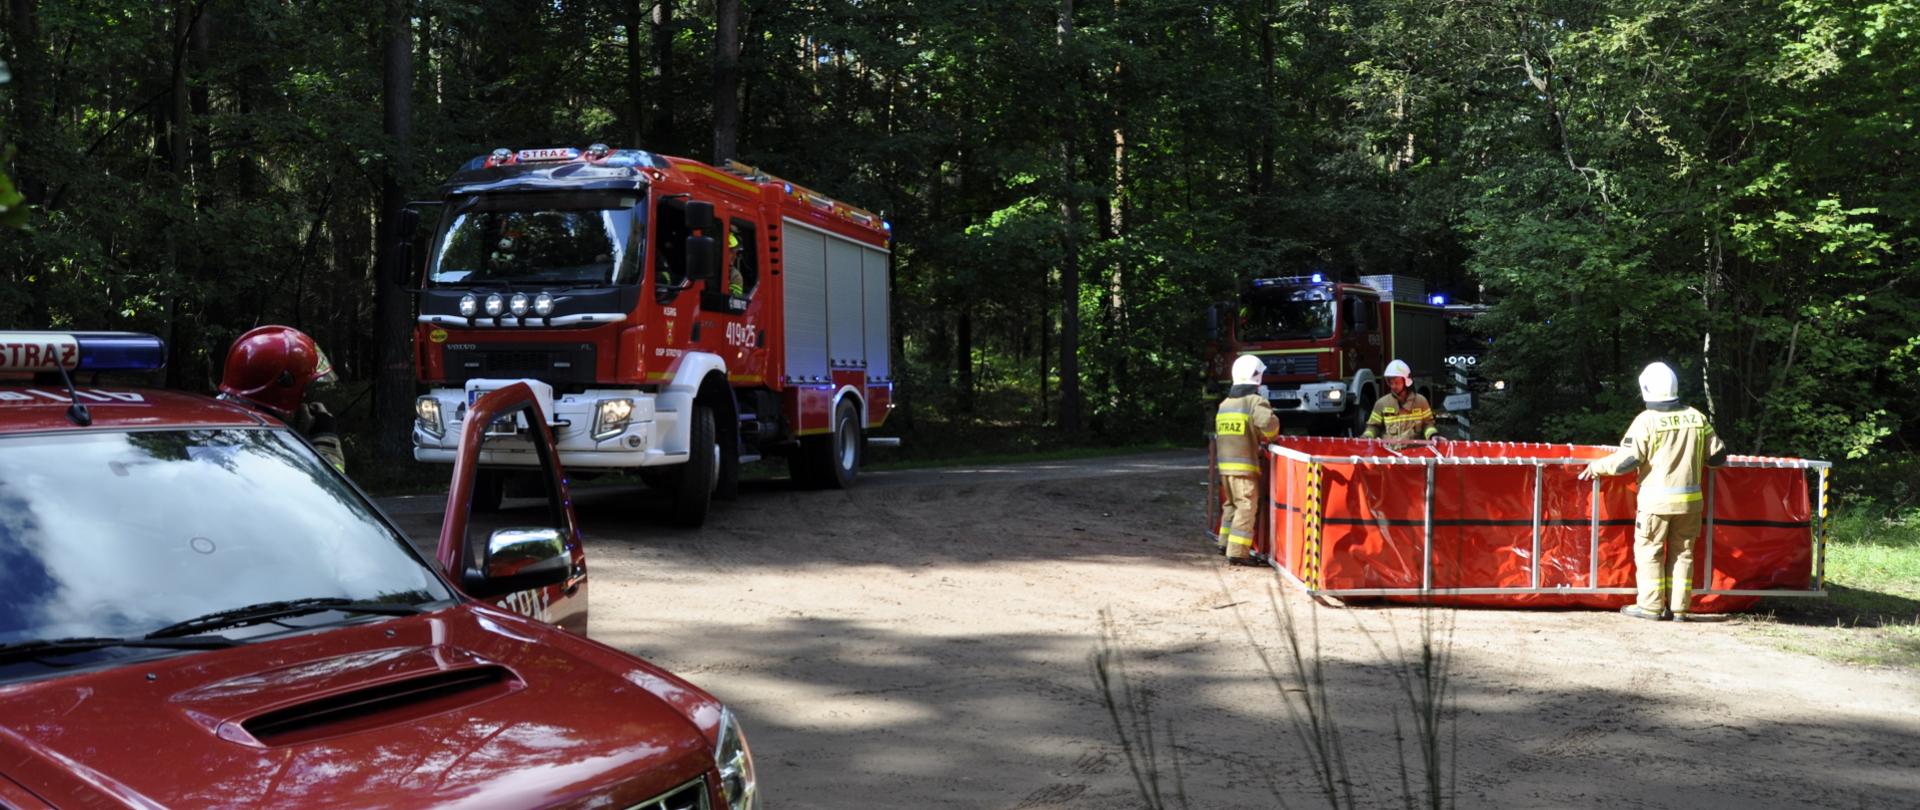 Zdjęcie przedstawia pojazdy pożarnicze dojeżdżające do zbiornika wody rozstawianego przez strażaków na leśnym skrzyżowaniu dróg.